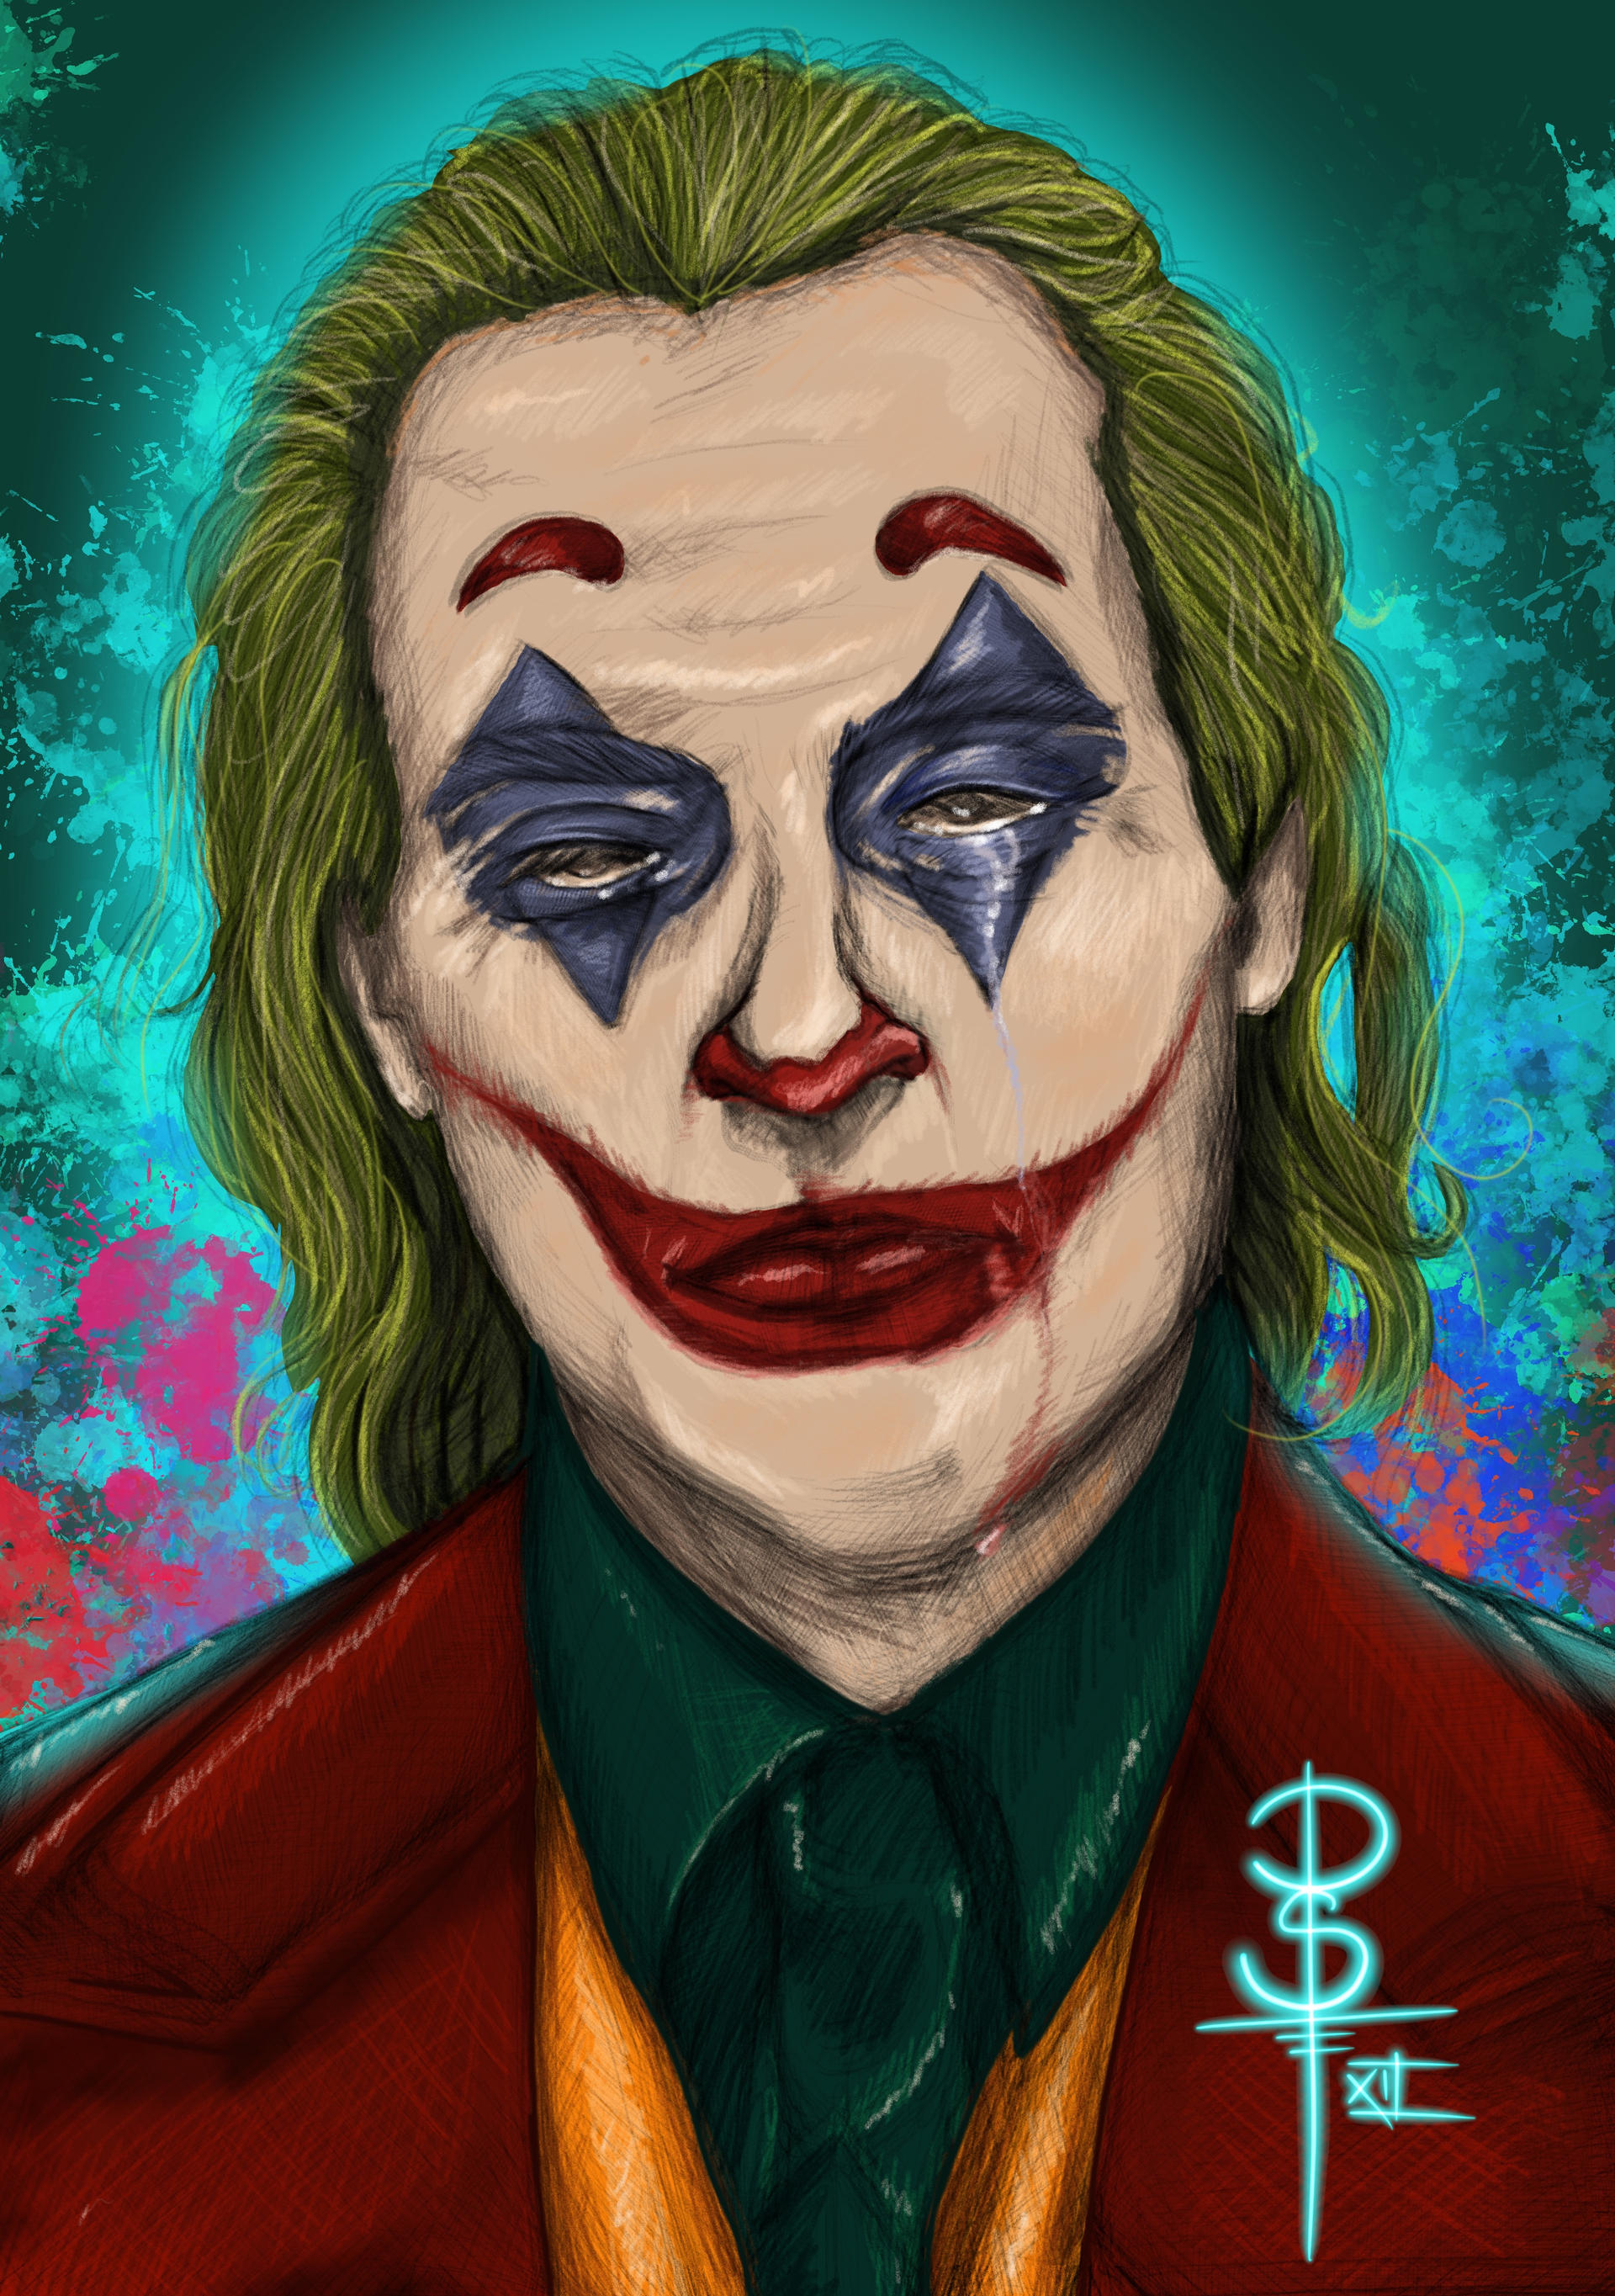 Sad Joker by Sematerasu on DeviantArt